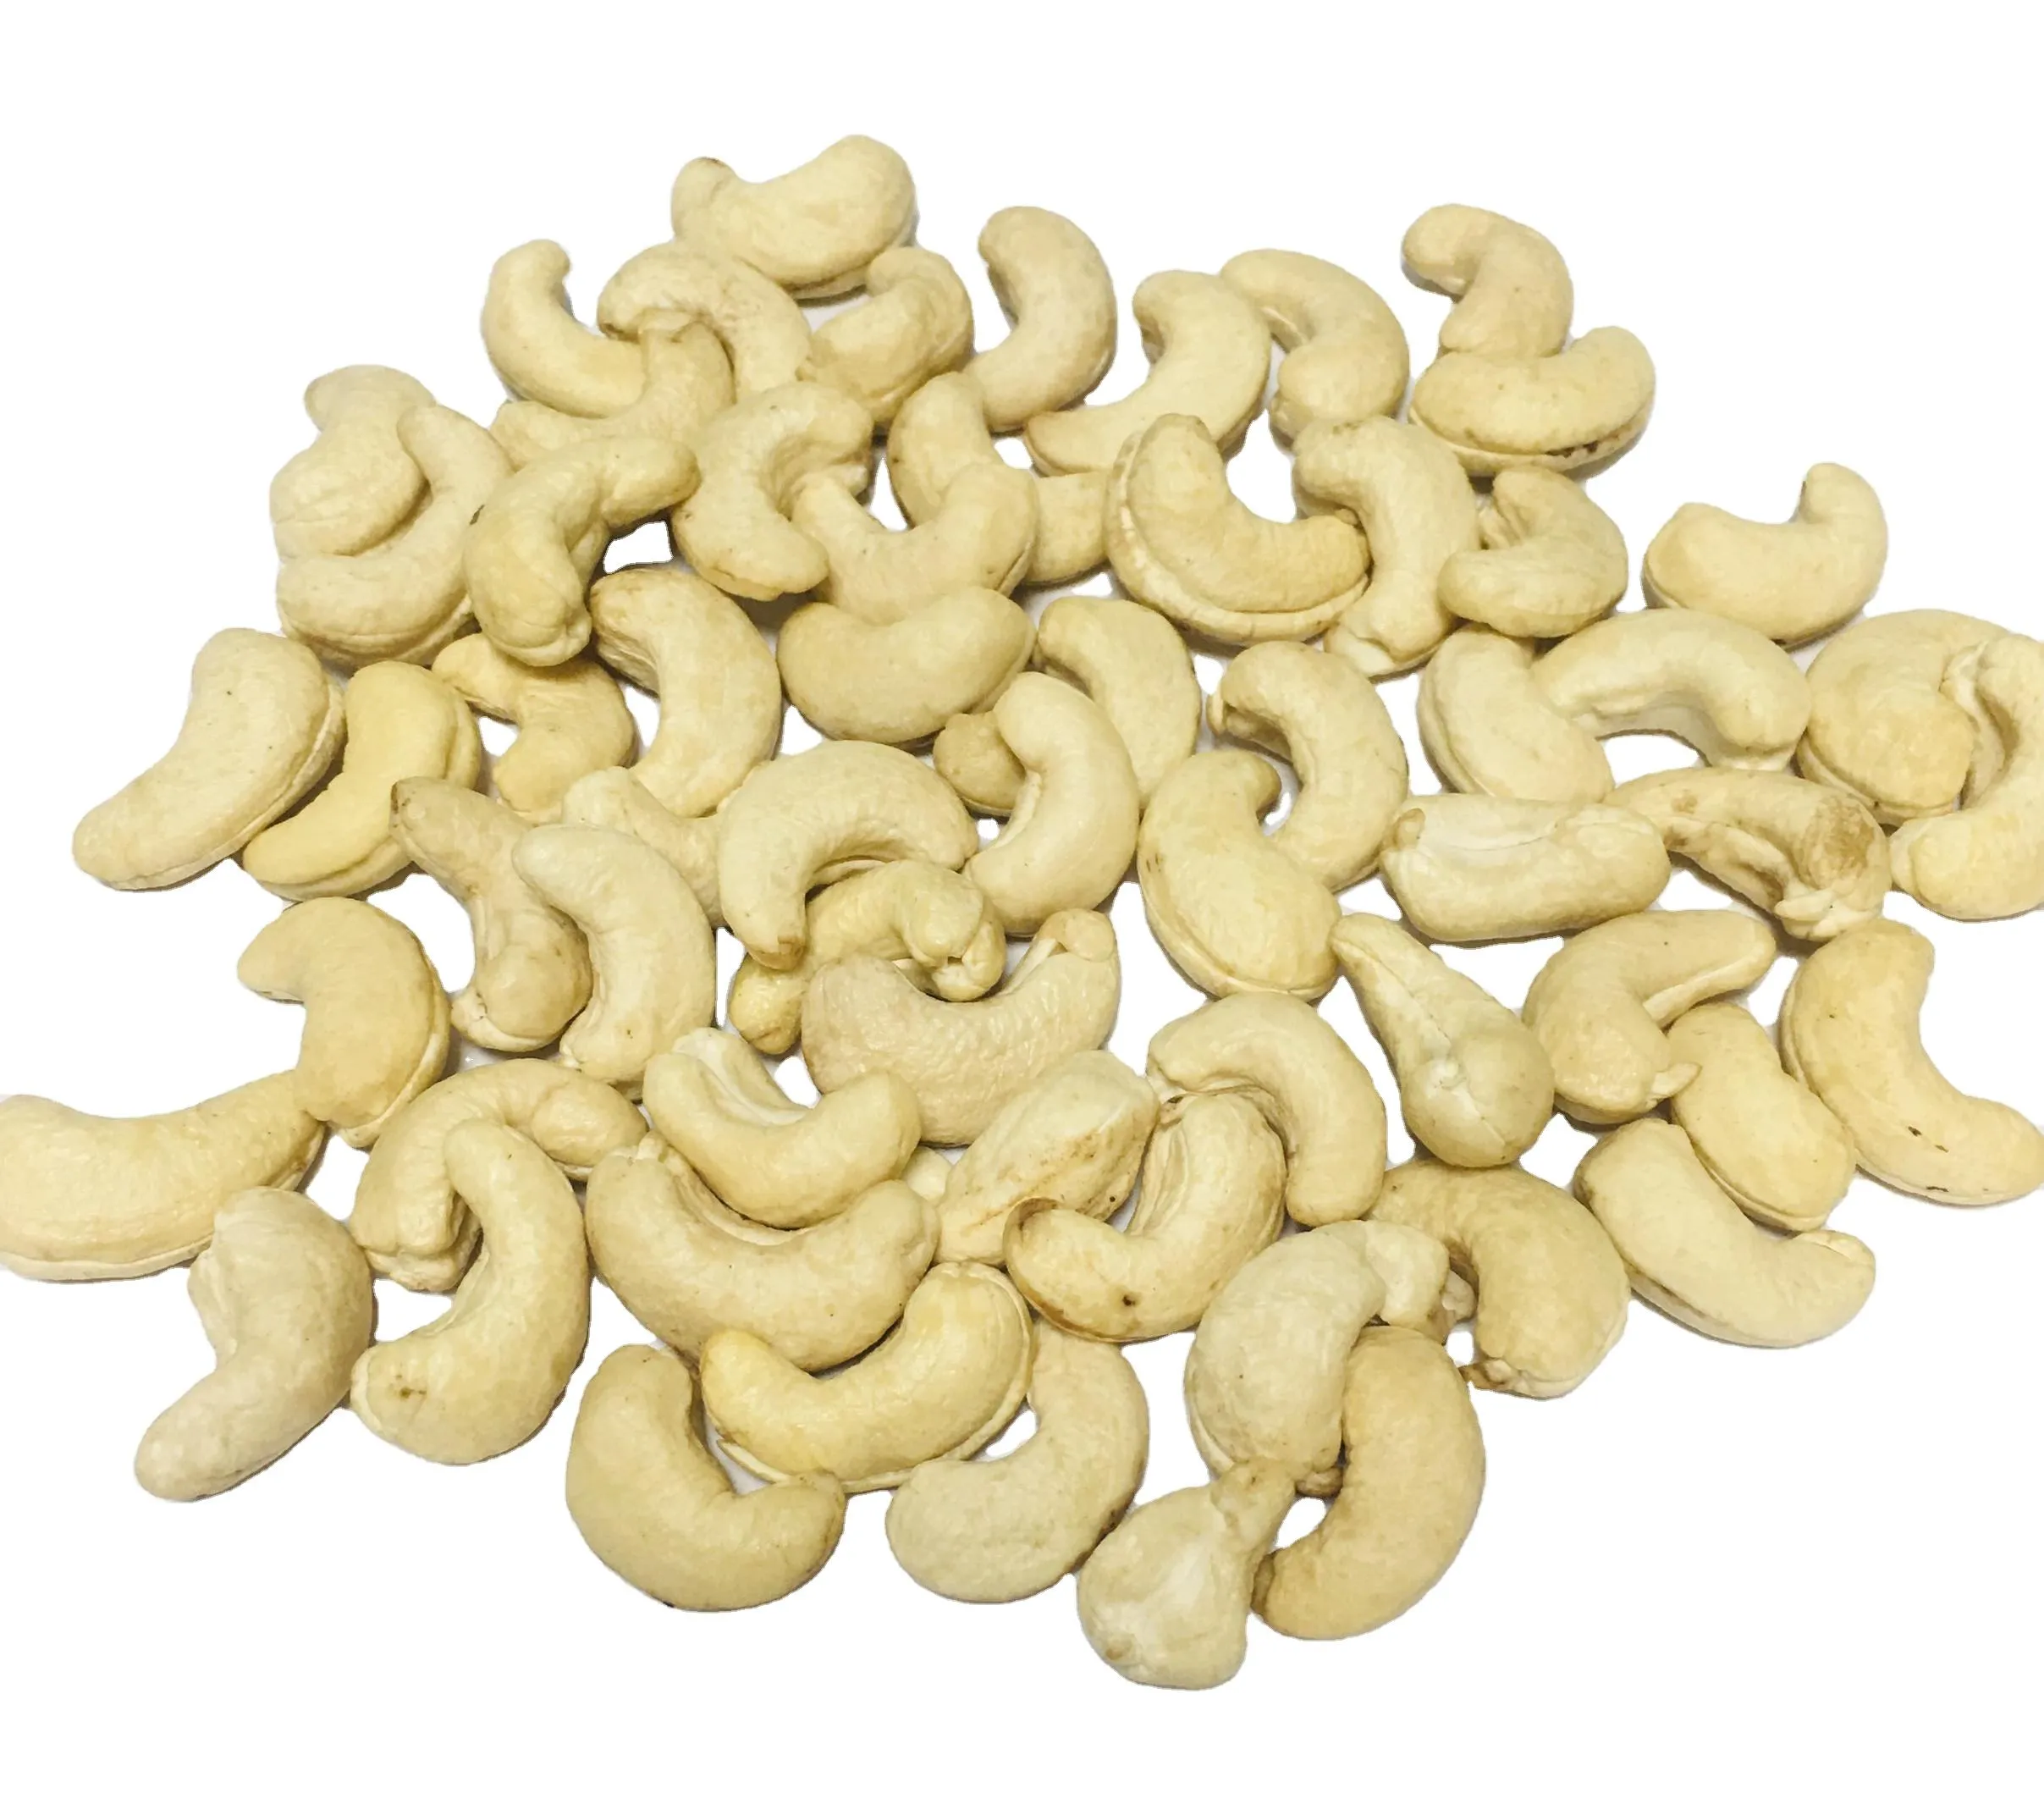 Buy raw cashew pieces bulk + best price